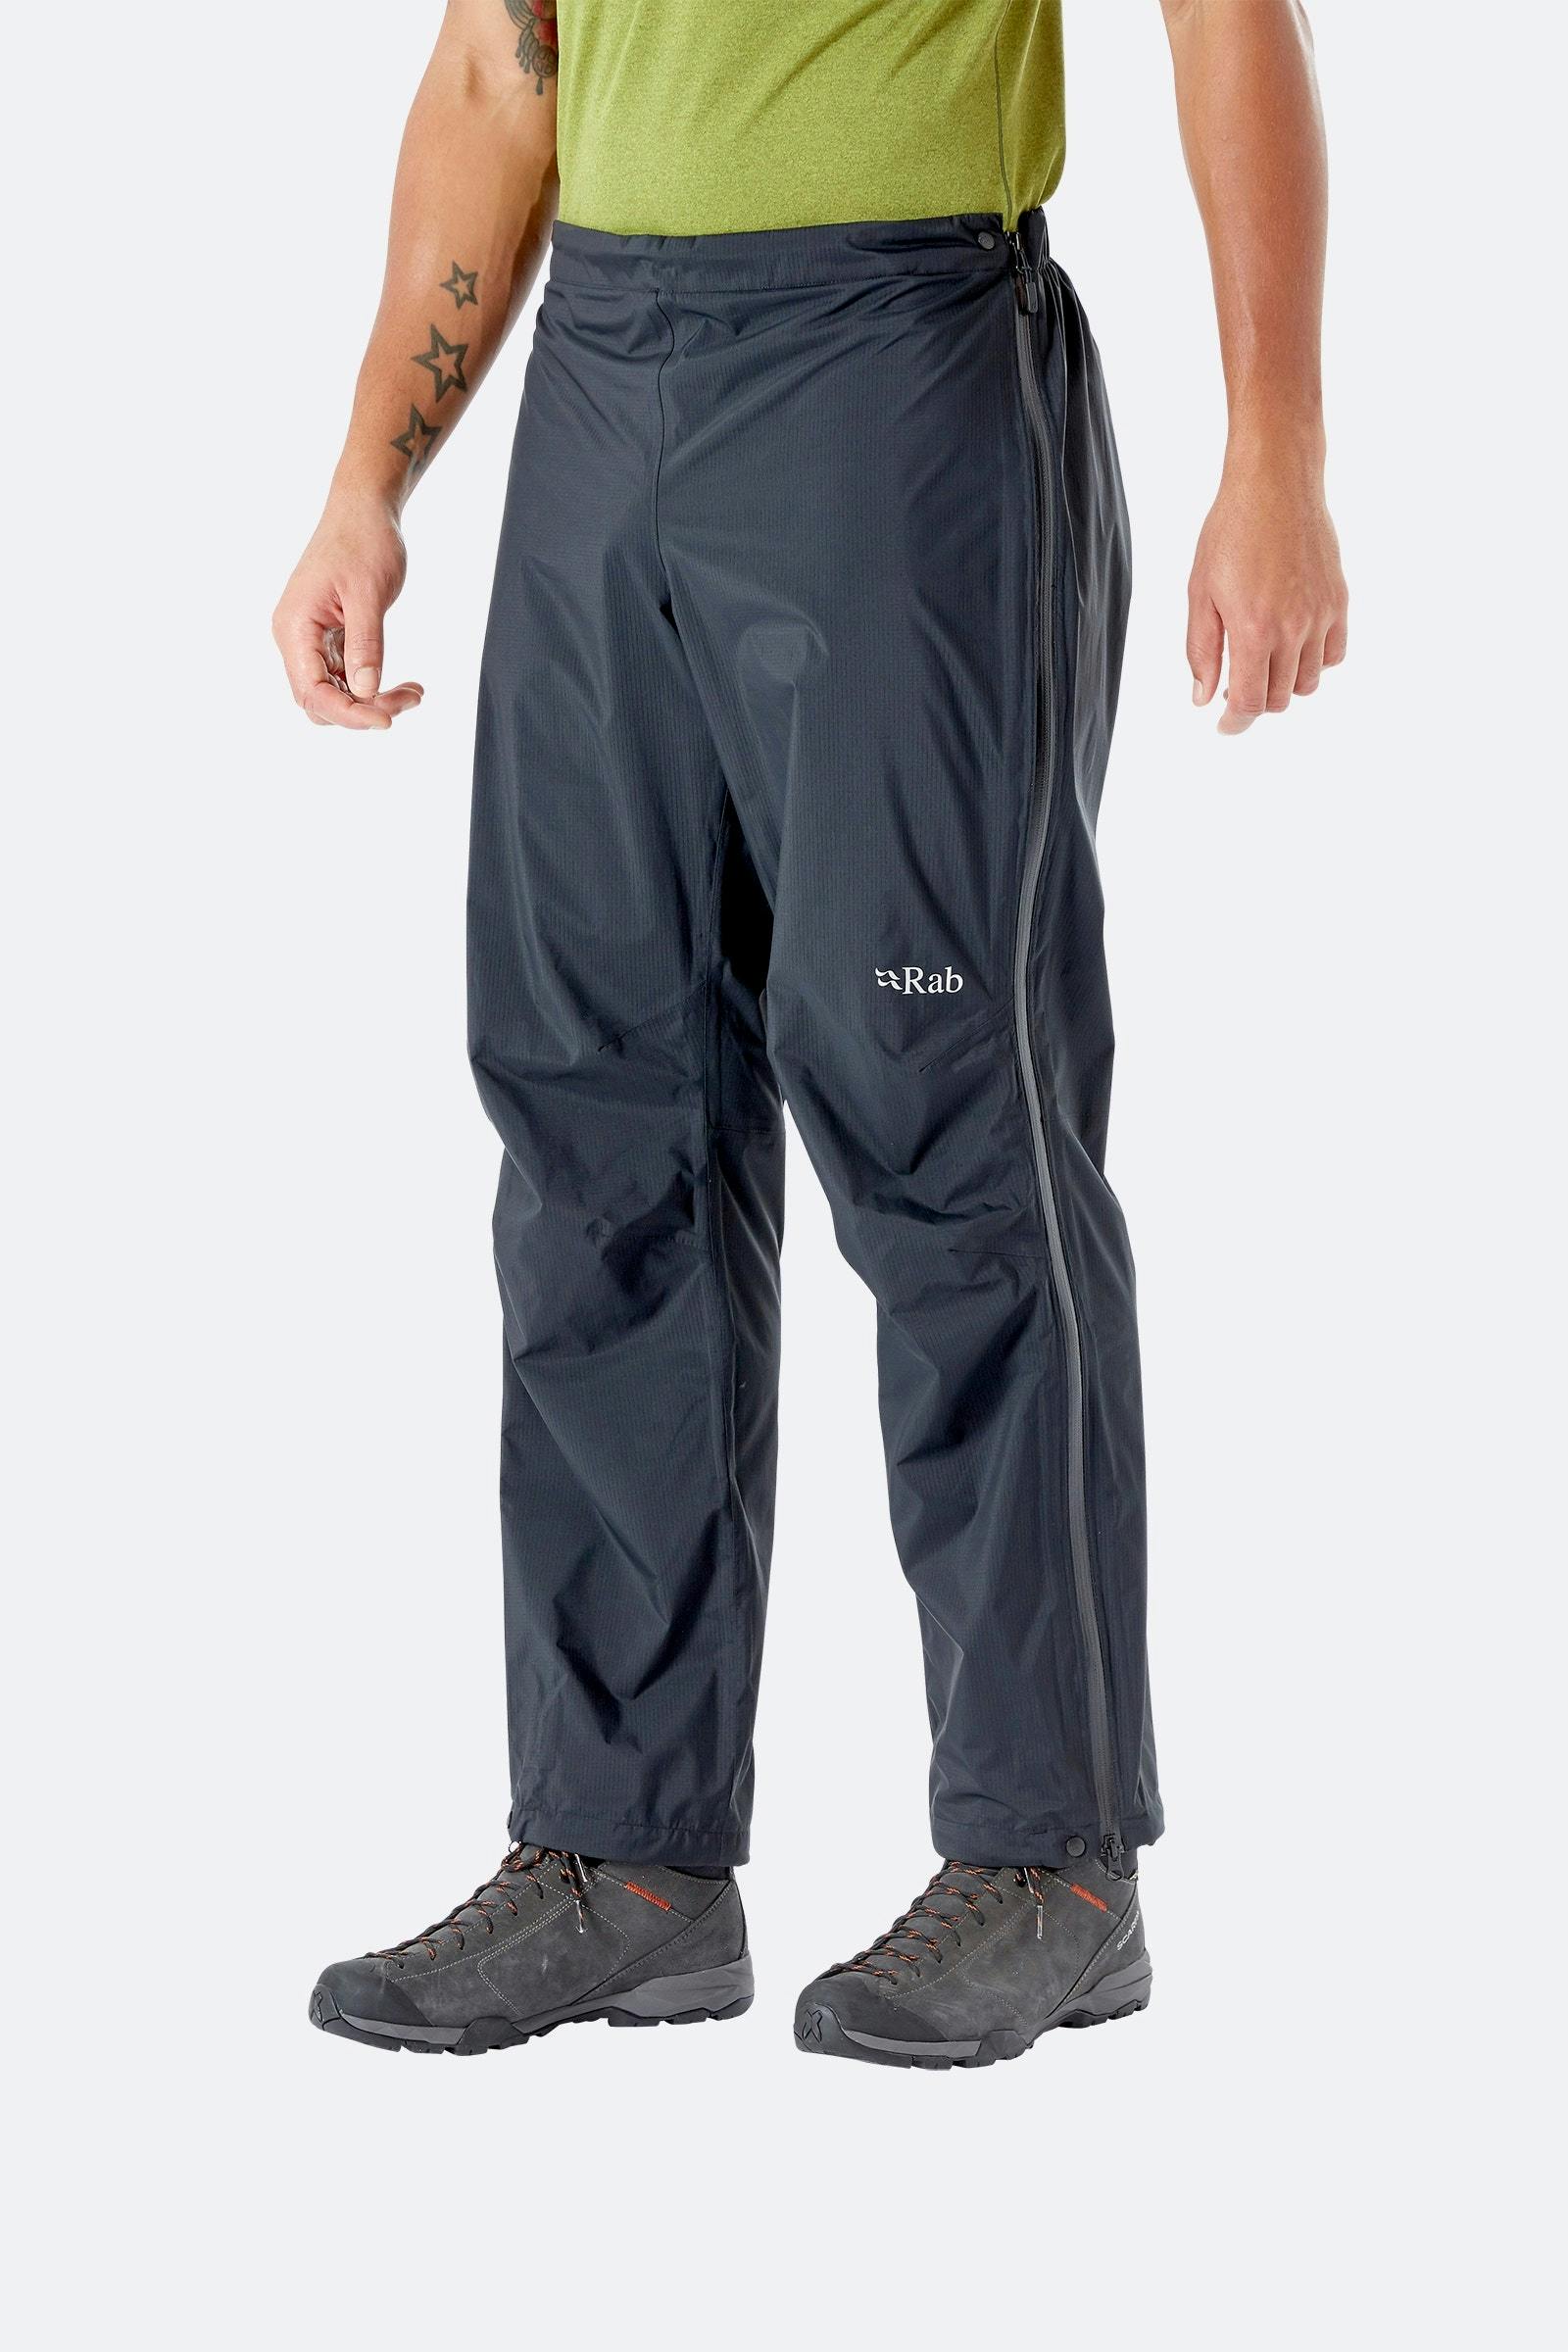 Rab Men's Downpour Plus 2.0 Pants